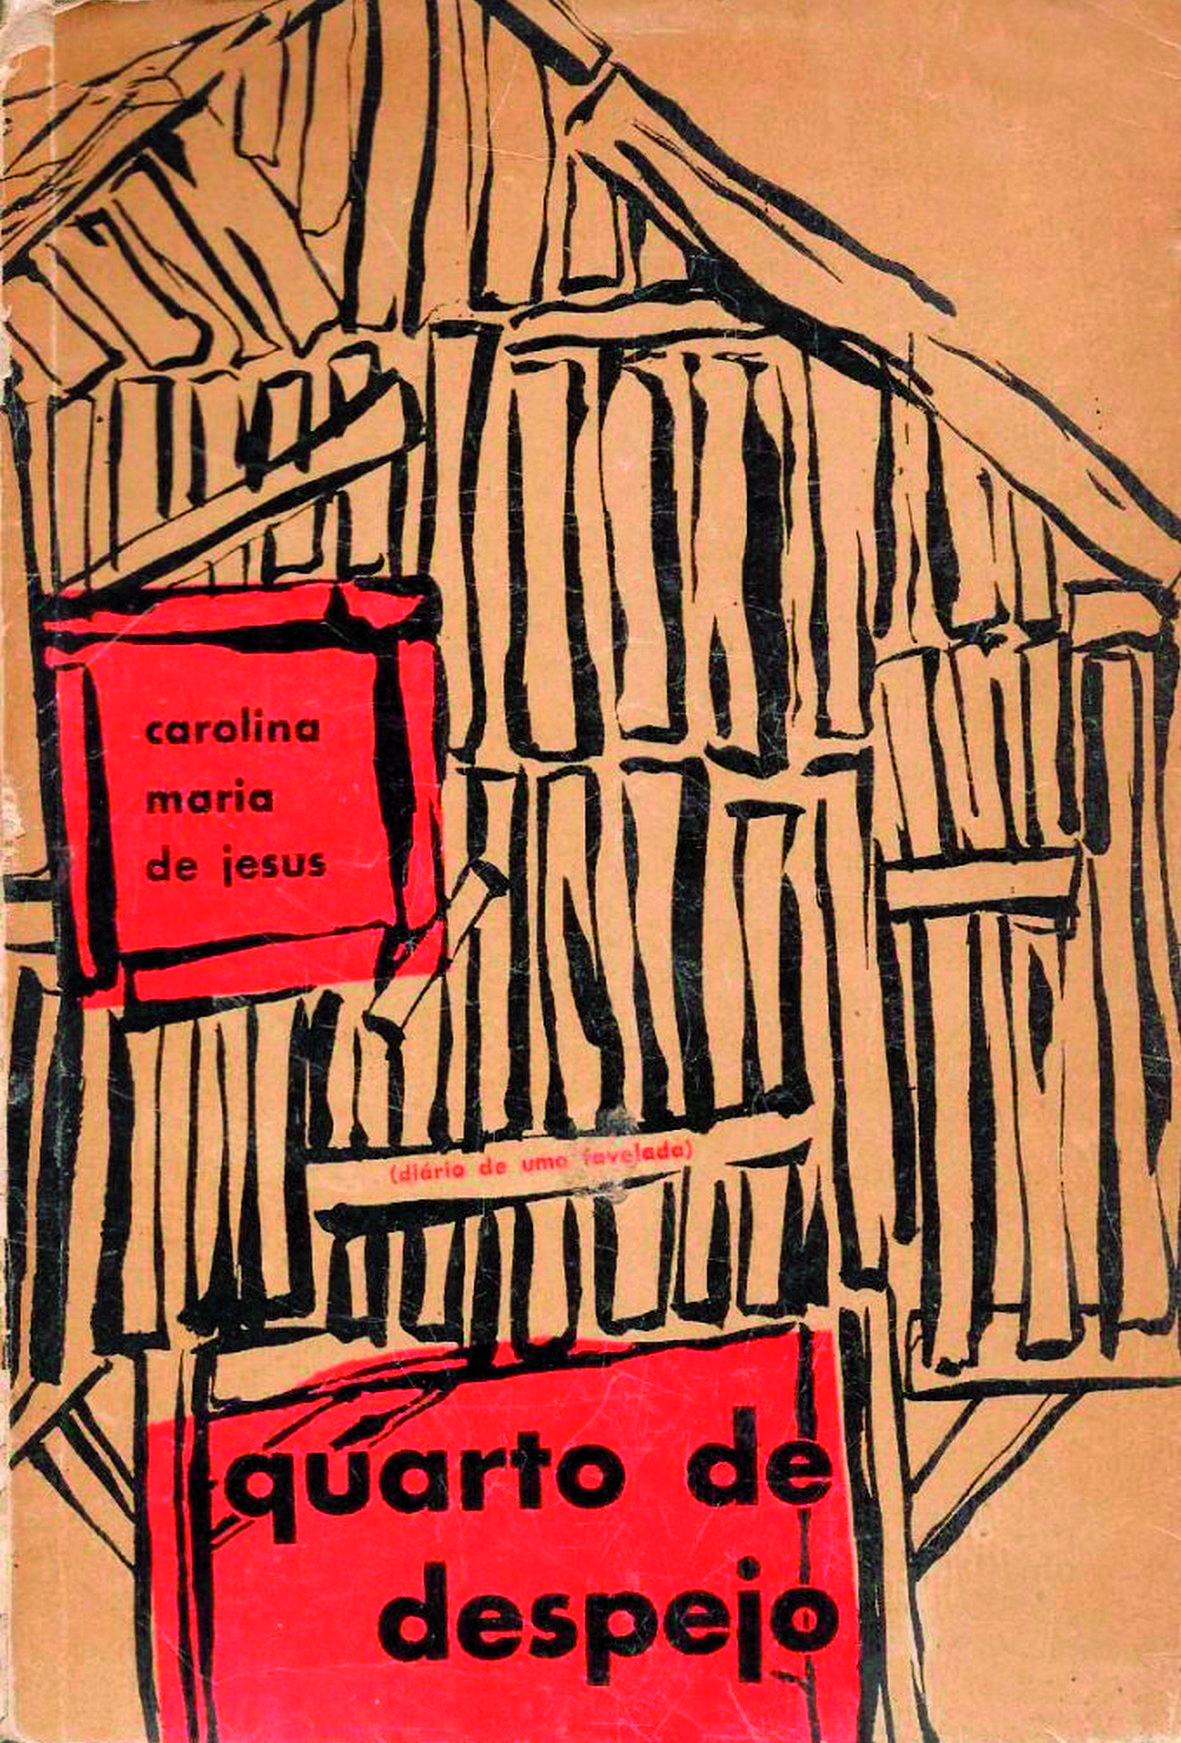 Fotografia. Capa de livro com ilustração representando a fachada de uma moradia simples, construída com pedaços de madeira. À esquerda, em um quadro vermelho simulando uma janela, o texto: Carolina Maria de Jesus. Na parte inferior, em um quadro vermelho, o texto: Quarto de despejo.